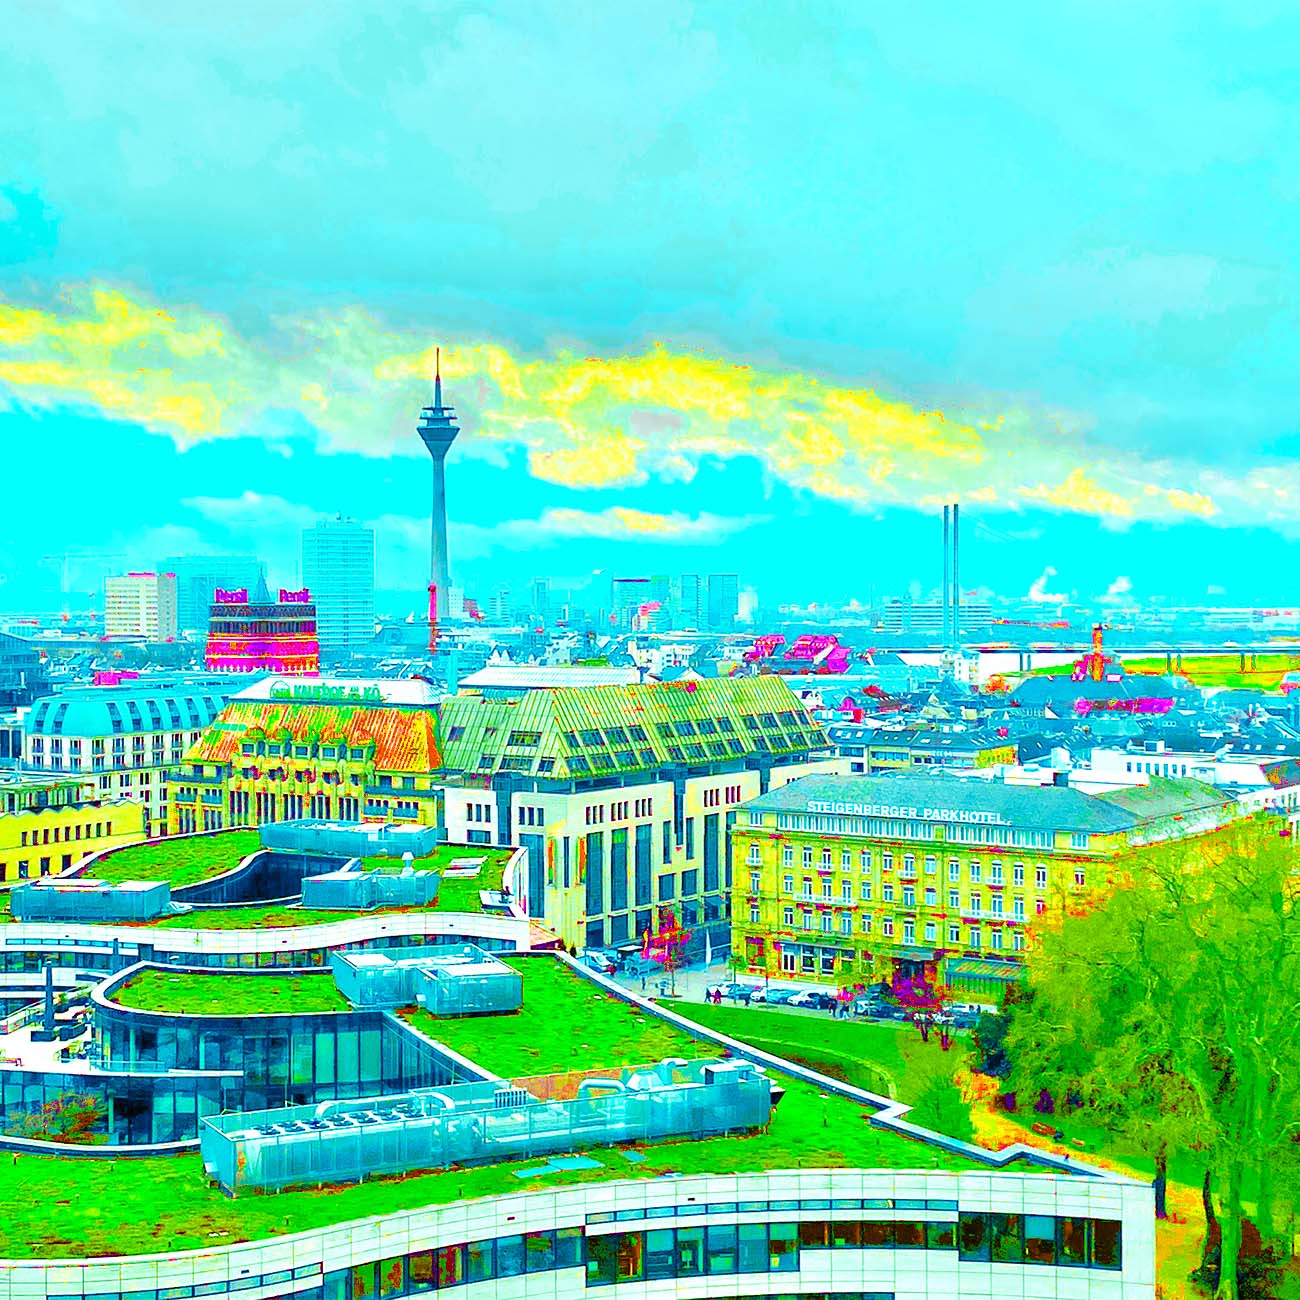 Das Popartbild über den Dächern von Düsseldorf zeigt den Blick auf den Köbogen, das Steigenberger Parkhotel, Galeria Kaufhof an der Kö und dann im Hintergrund den Rheinturm und die Rheinkniebrücke. Das Bild ist in türkis, gelb, grün und magenta gehalten.